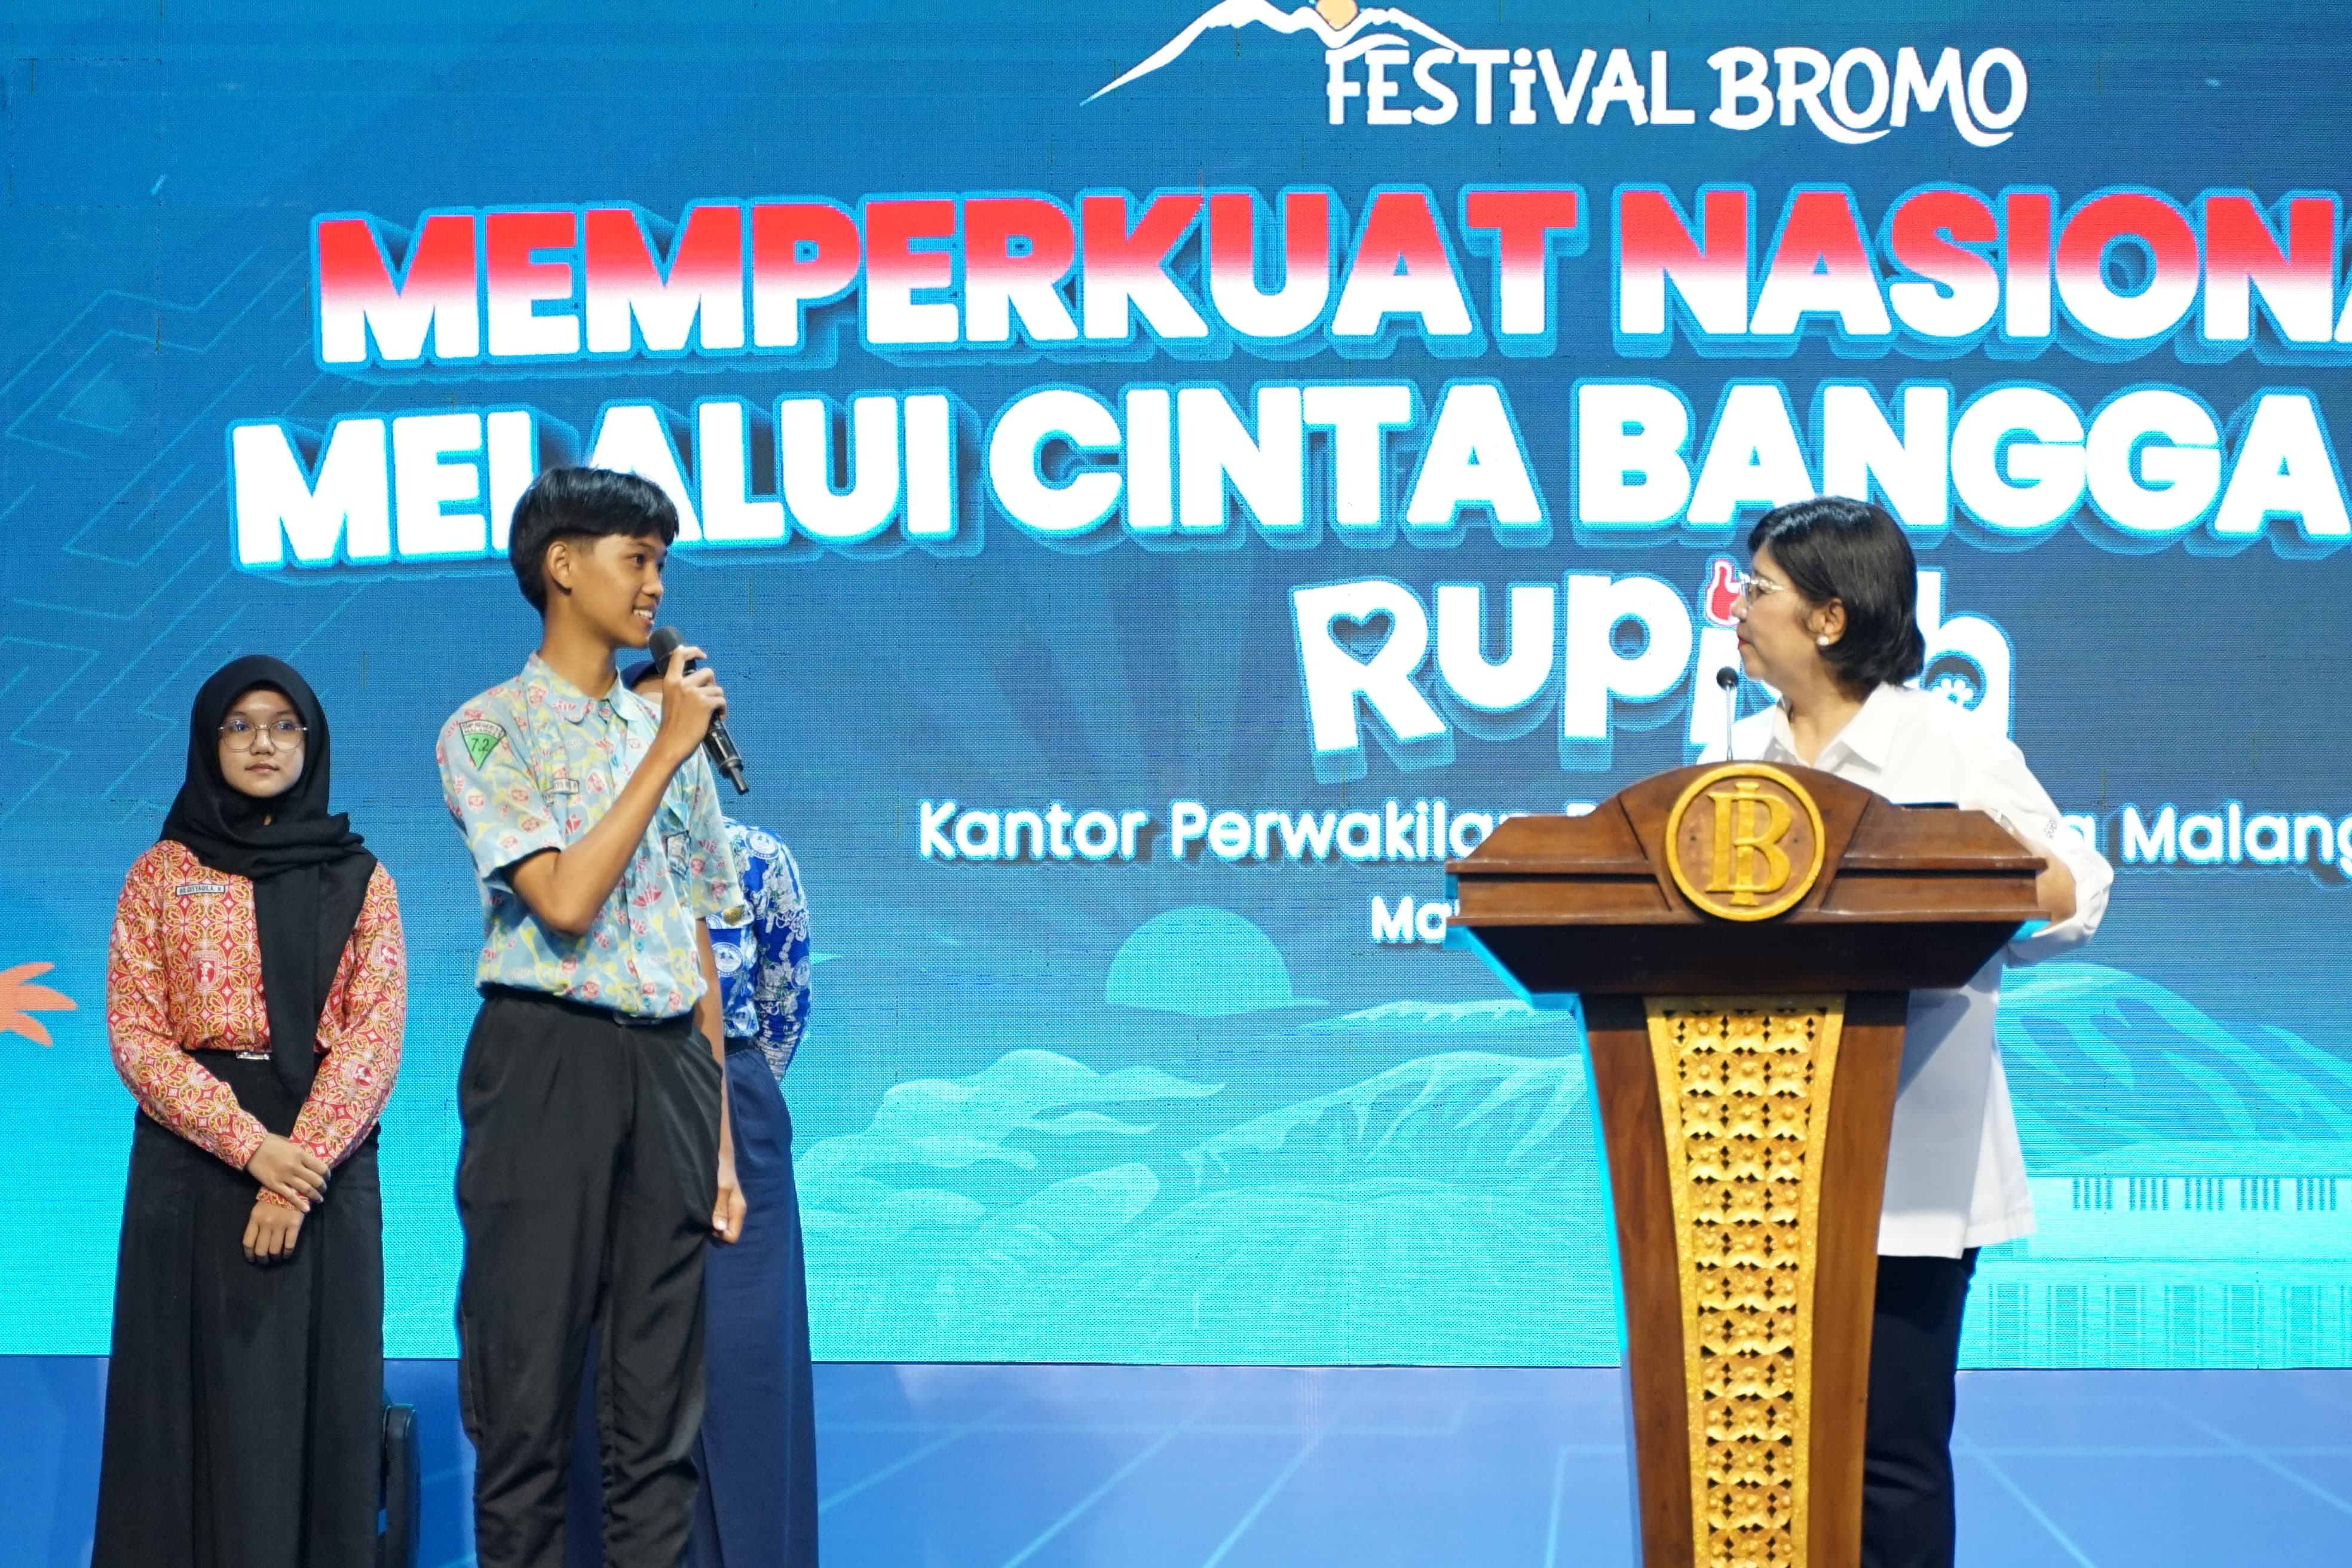 Festival Bromo Memperkuat Nasionalisme Melalui Cinta, Bangga, Paham Rupiah